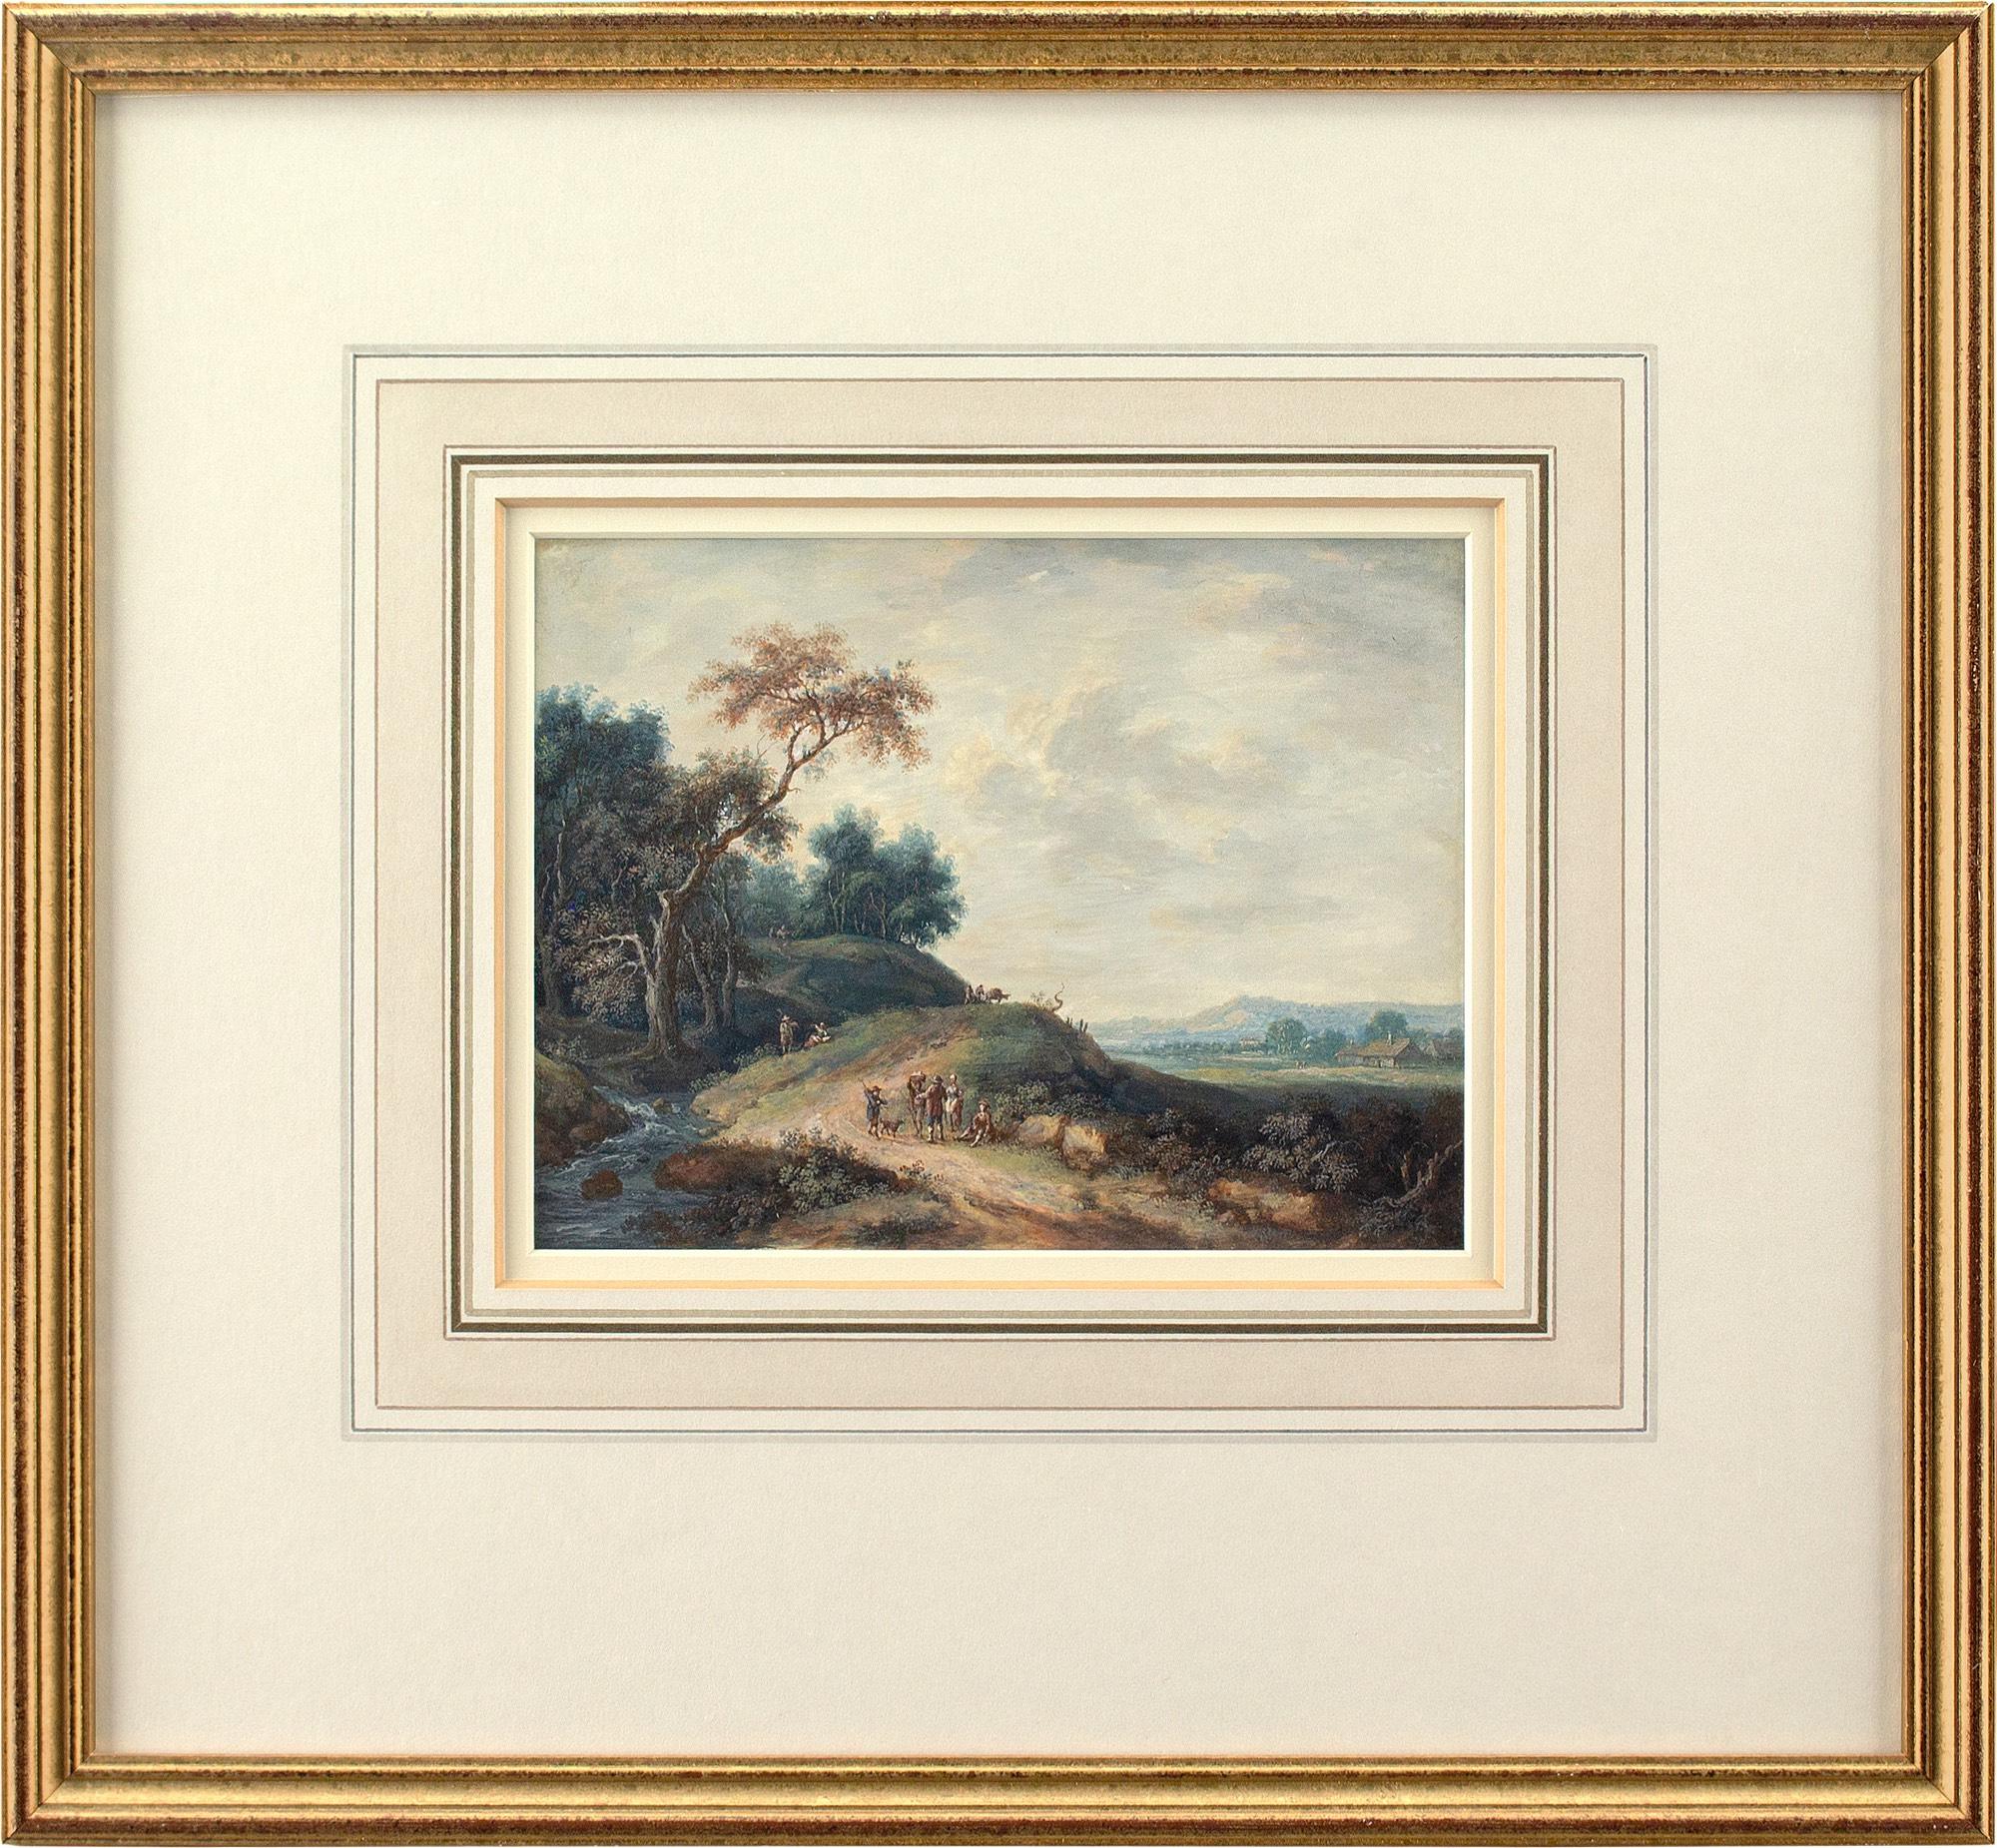 Diese Gouache des britischen Künstlers John Inigo Richards RA (1731-1810) aus dem späten 18. Jahrhundert zeigt eine malerische Landschaft mit Weg, Figuren und entfernten Häusern.

Inigo Richards suchte inmitten der lärmenden Dramatik der Londoner